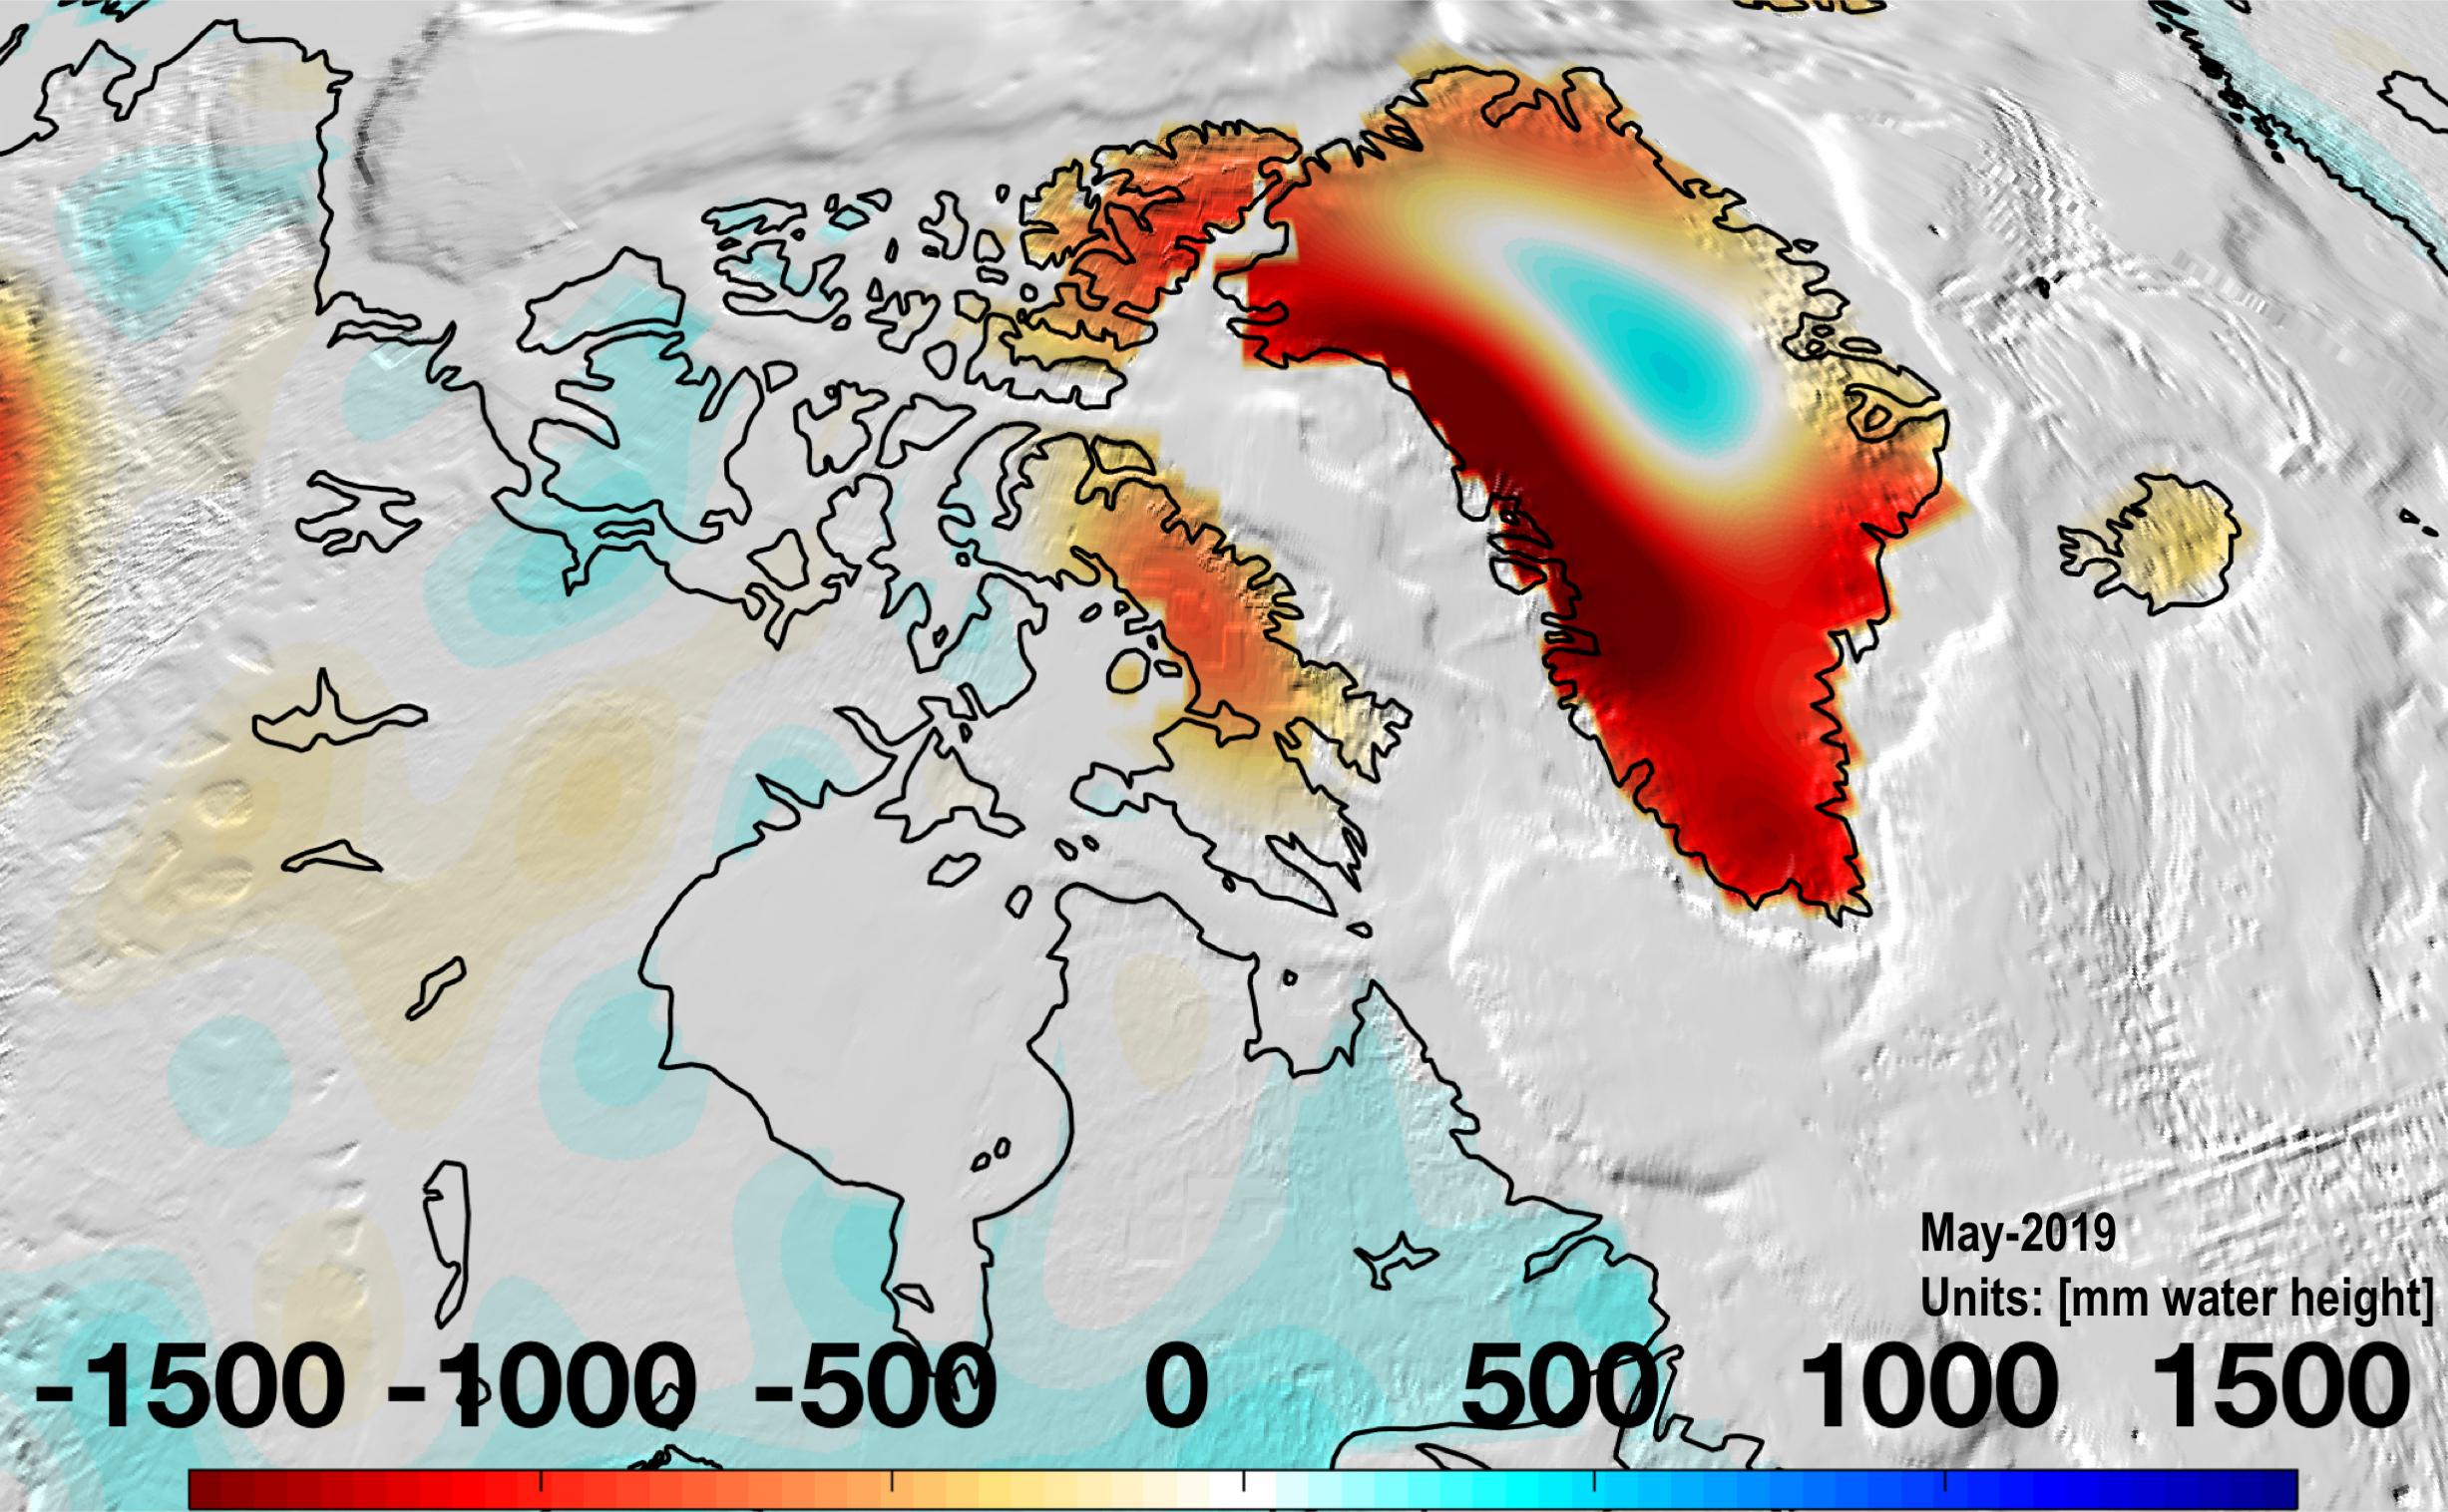 Greenland mass loss - May 2019